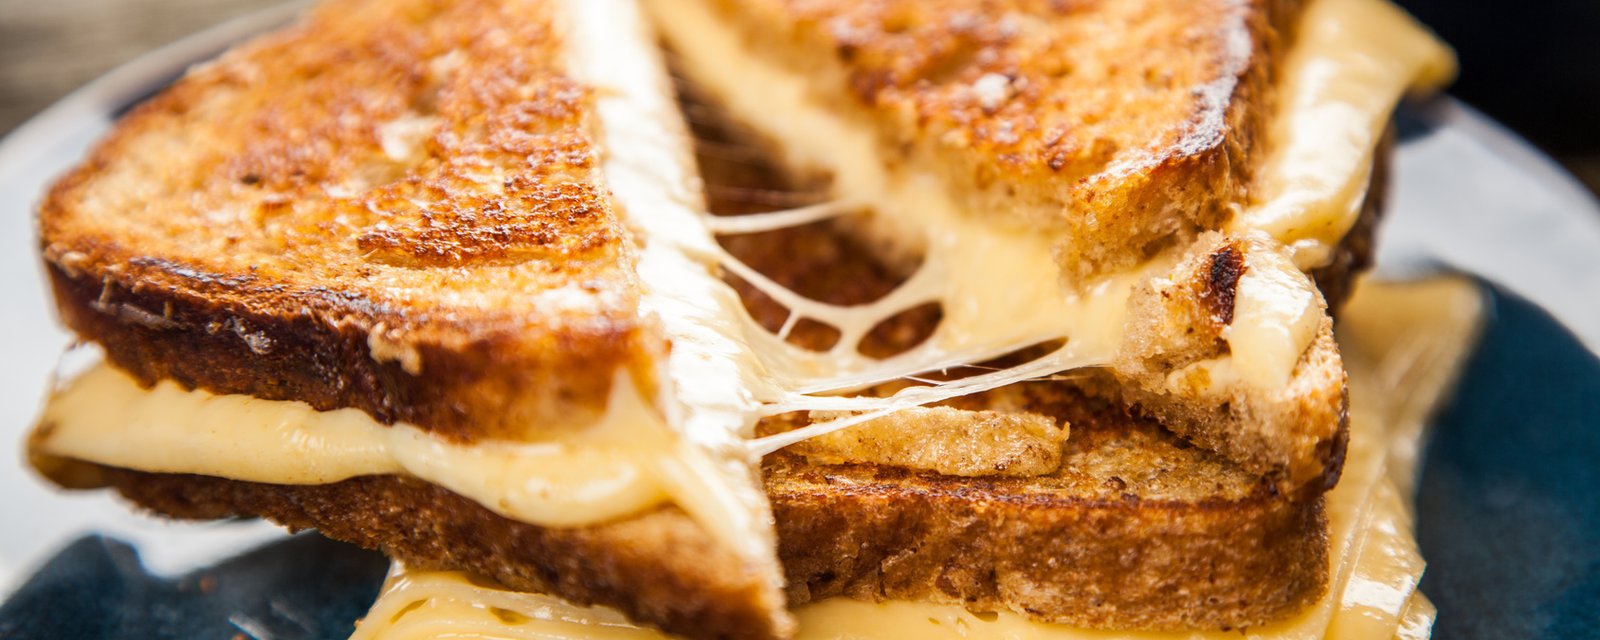 Remplacez le beurre par de la mayonnaise la prochaine fois que vous faites des grilled cheese